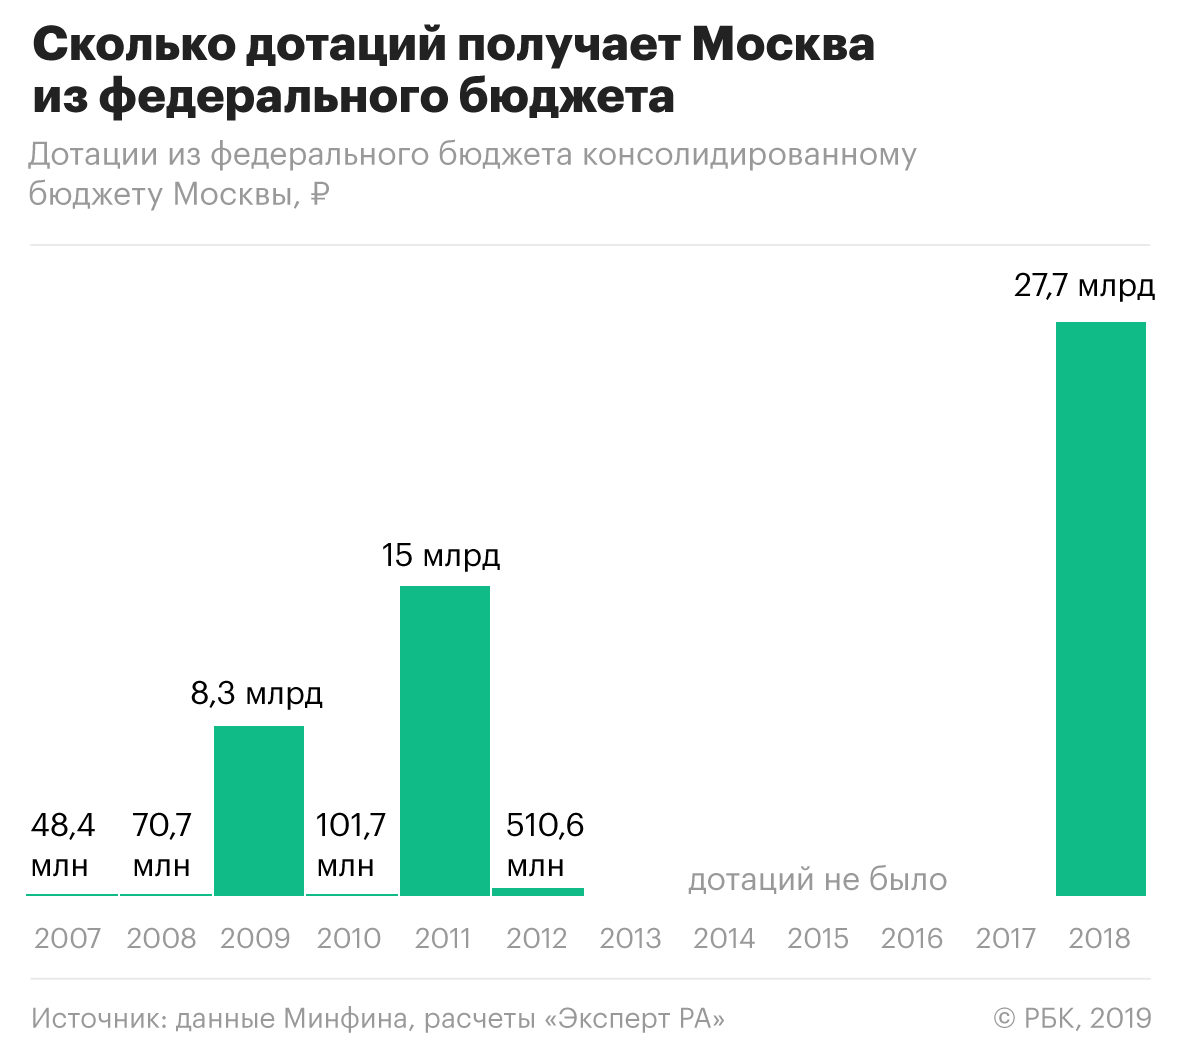 Москва получила дотации из федерального бюджета впервые за шесть лет